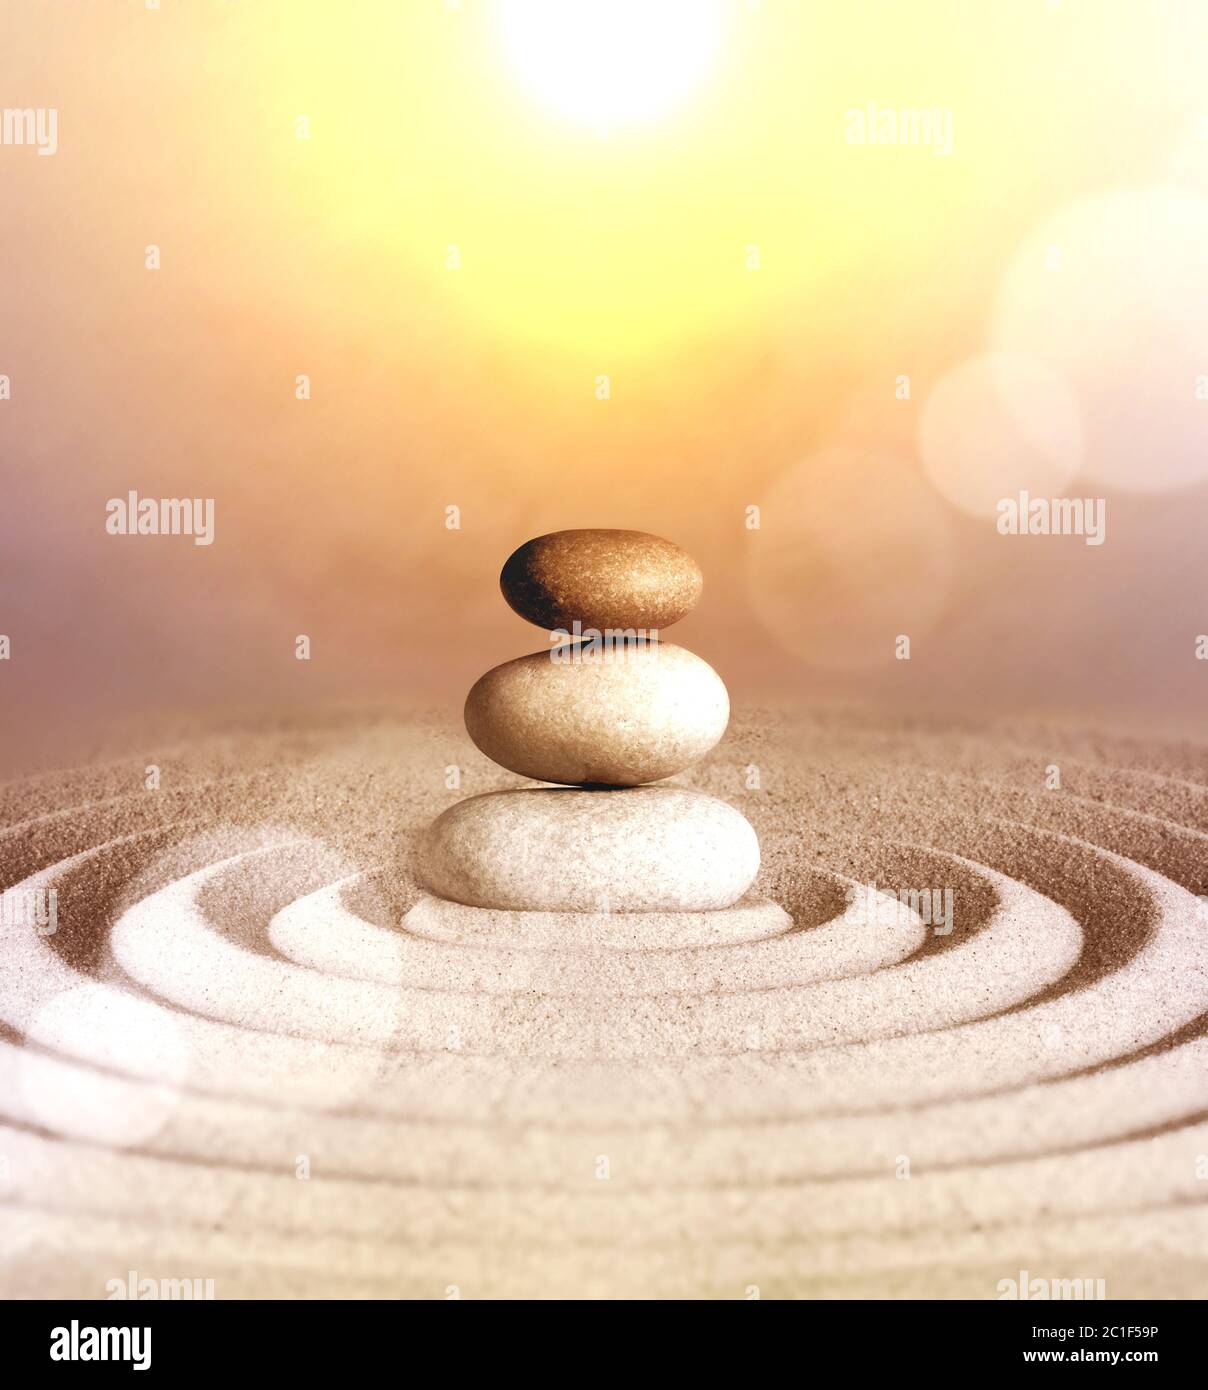 Jardin zen japonais méditation pierre concentration et détente sable et roche pour l'harmonie et l'équilibre. Banque D'Images